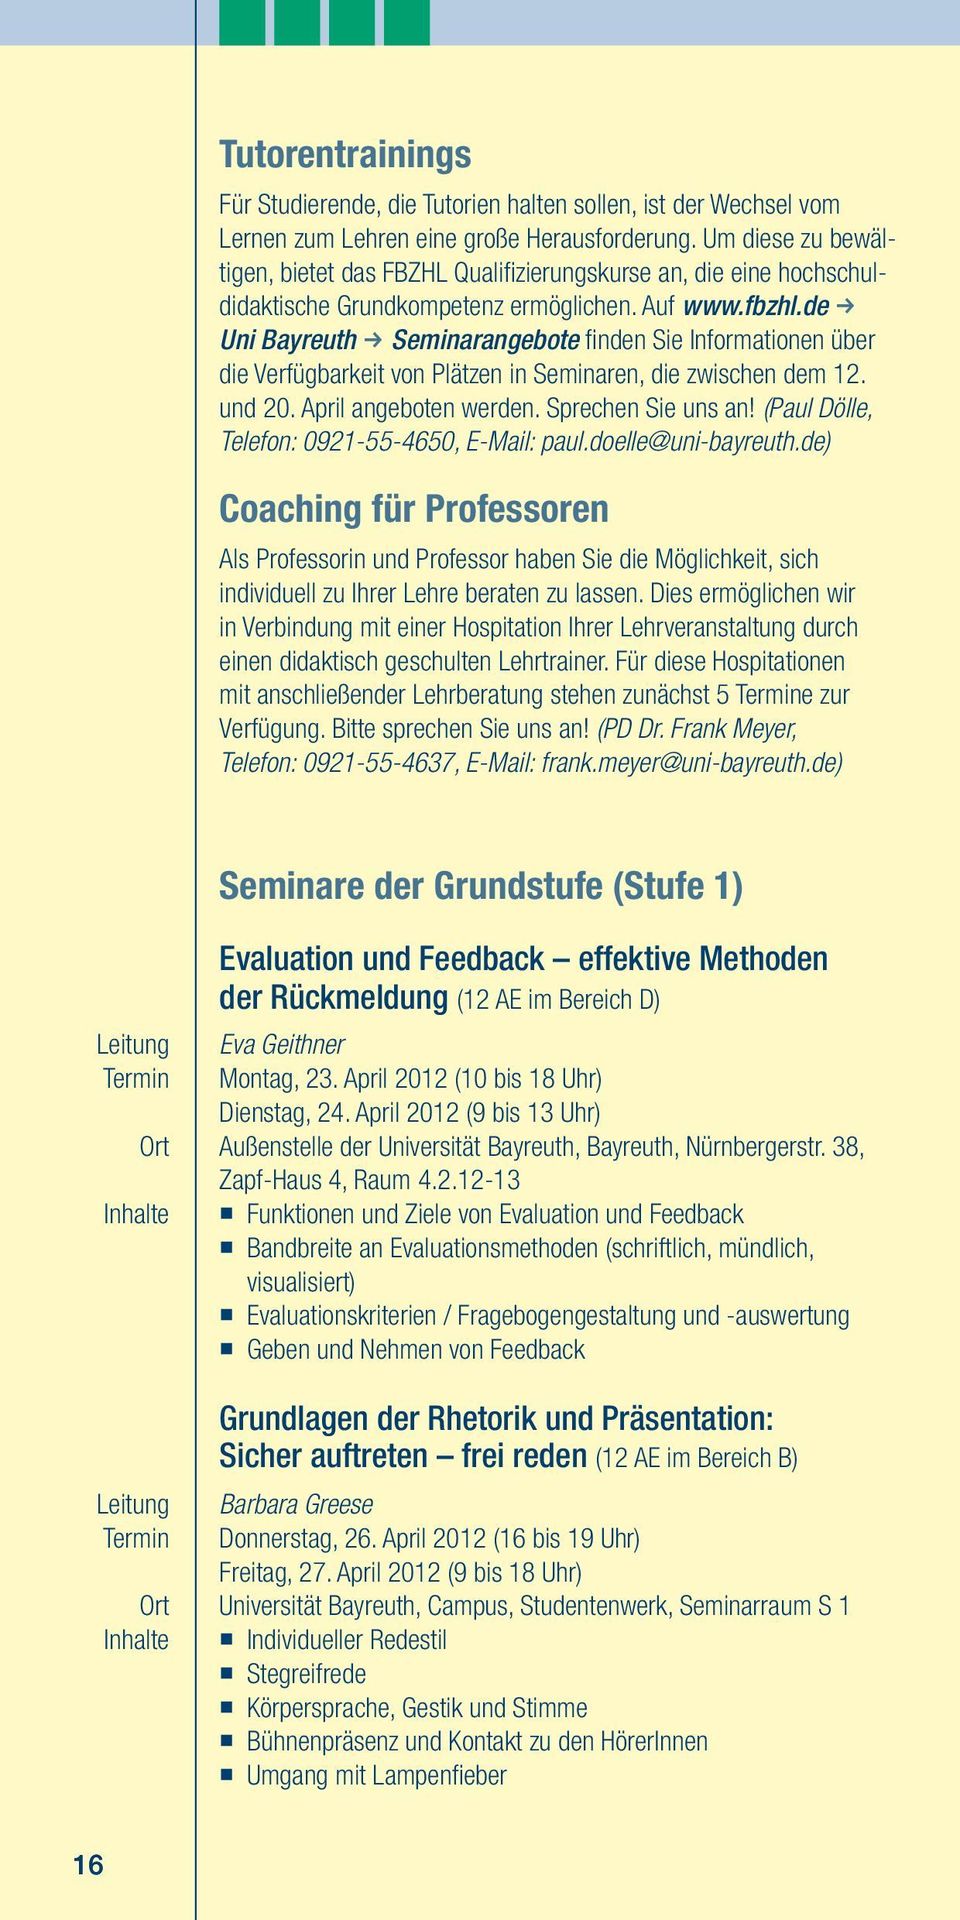 de f Uni Bayreuth f Seminarangebote finden Sie Informationen über die Verfügbarkeit von Plätzen in Seminaren, die zwischen dem 12. und 20. April angeboten werden. Sprechen Sie uns an!